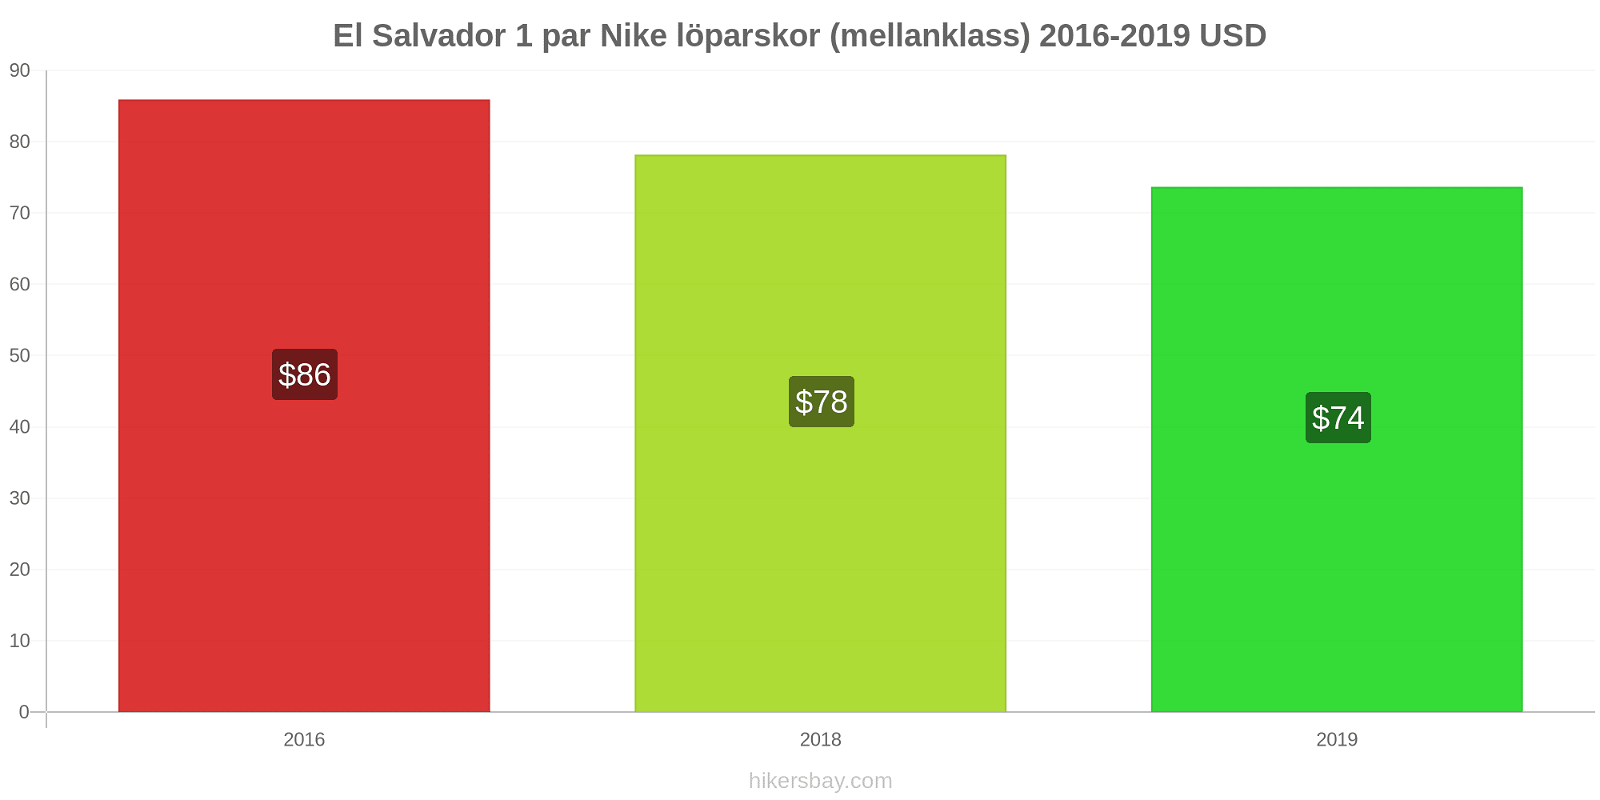 El Salvador prisförändringar 1 par Nike löparskor (mellanklass) hikersbay.com